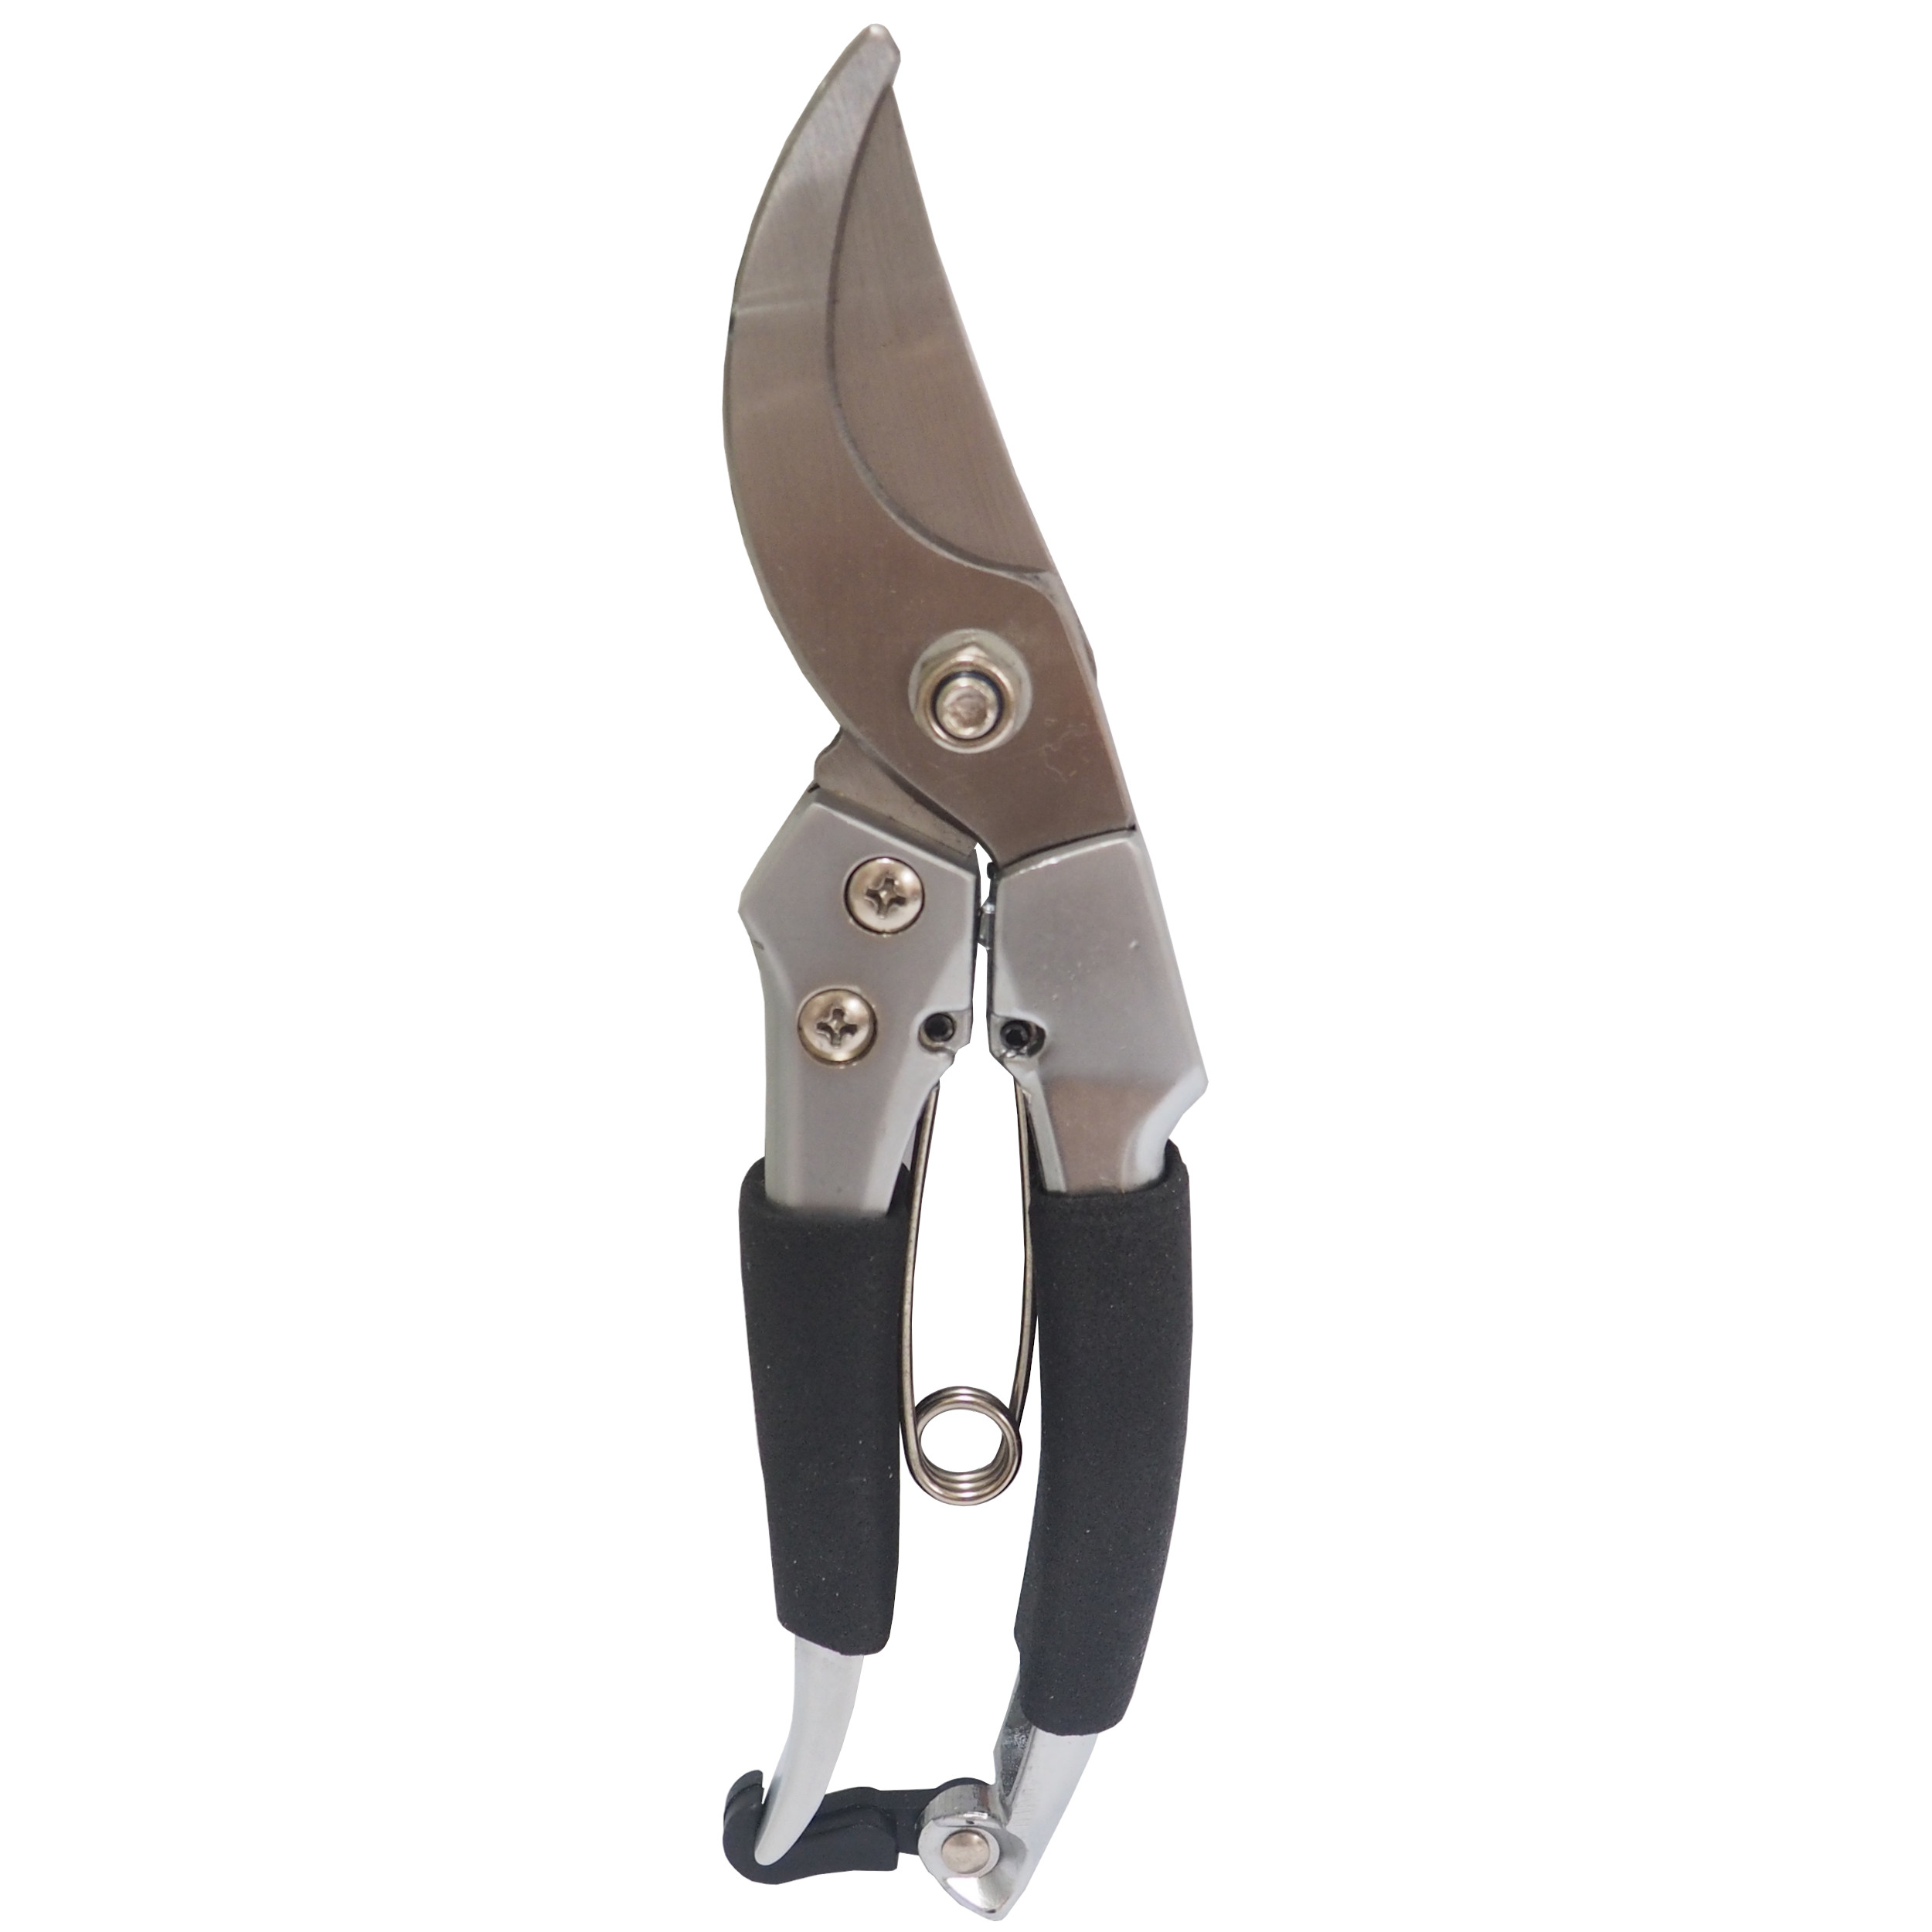 REFLEX nůžky zahradnické, hliníkové, půlkulaté, s drátovou pružinou, 200 mm, profi 0.30 Kg TOP Sklad4 307157 111